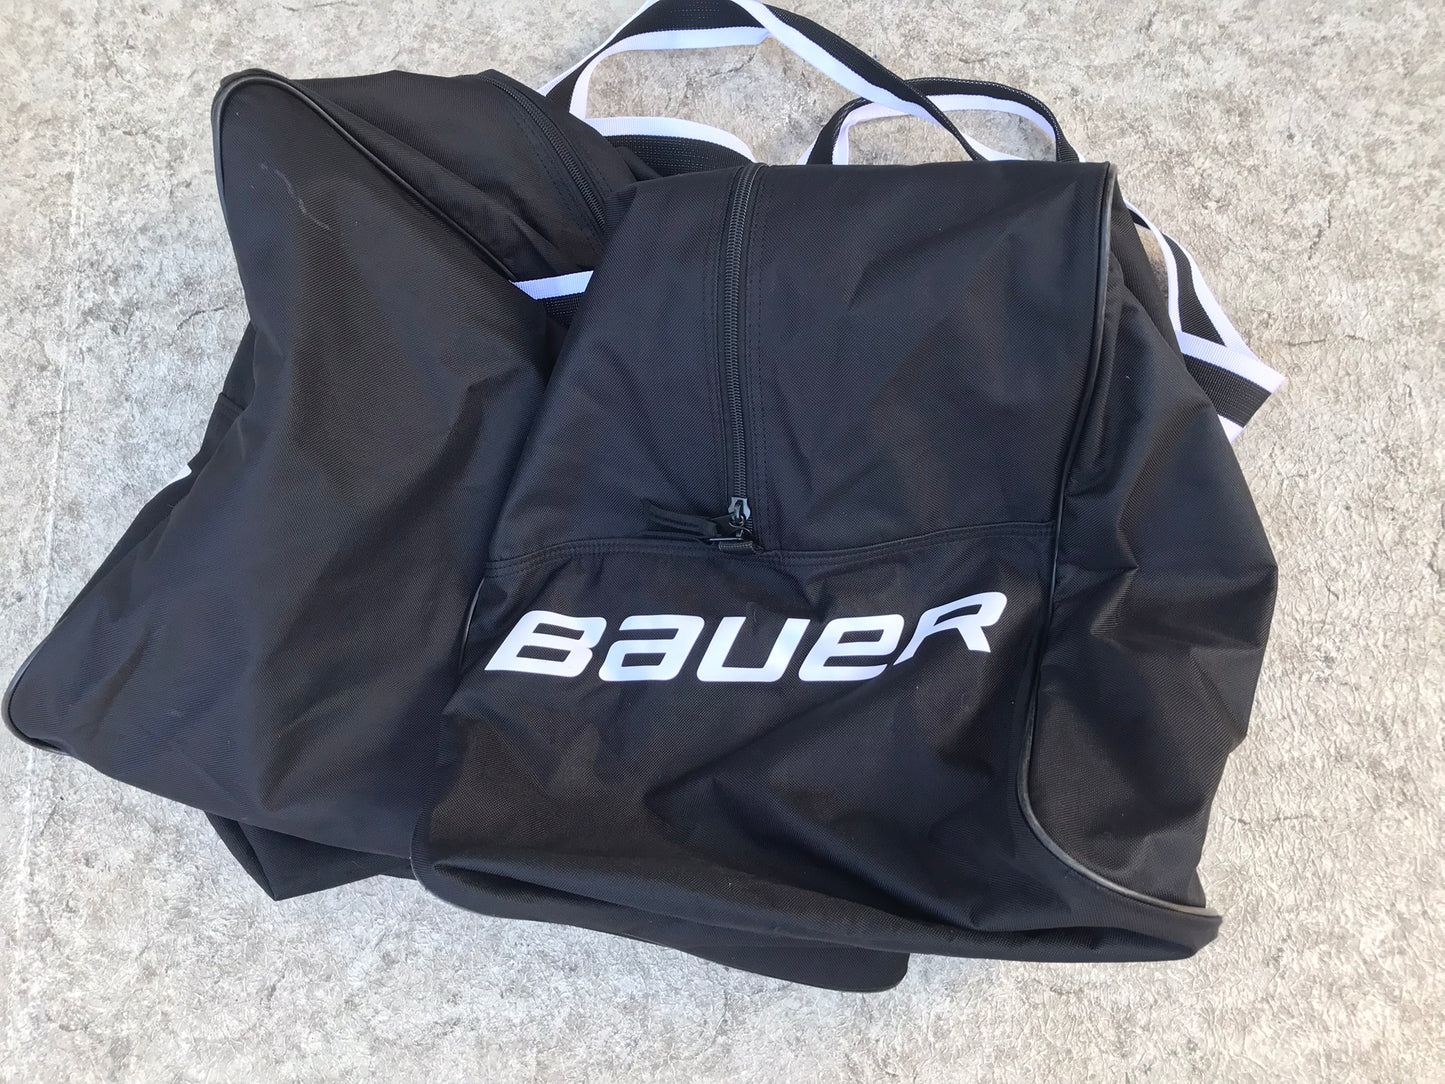 Hockey Bag Youth Child Age 4-7 Bauer Black White Like New